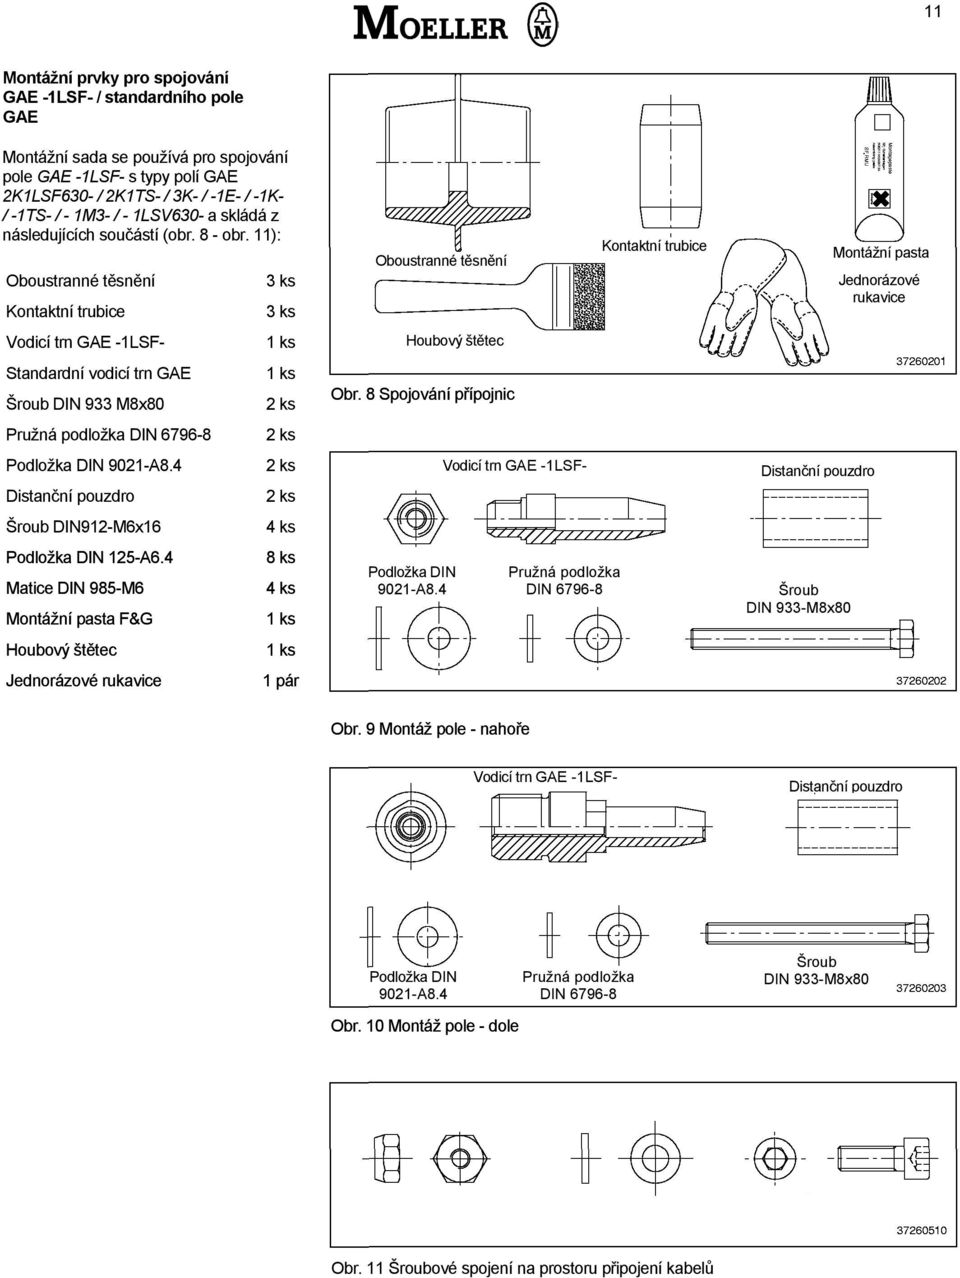 11): Oboustranné těsnění Kontaktní trubice Vodicí trn GAE -1LSF- Standardní vodicí trn GAE Šroub DIN 933 M8x80 Pružná podložka DIN 6796-8 Podložka DIN 9021-A8.